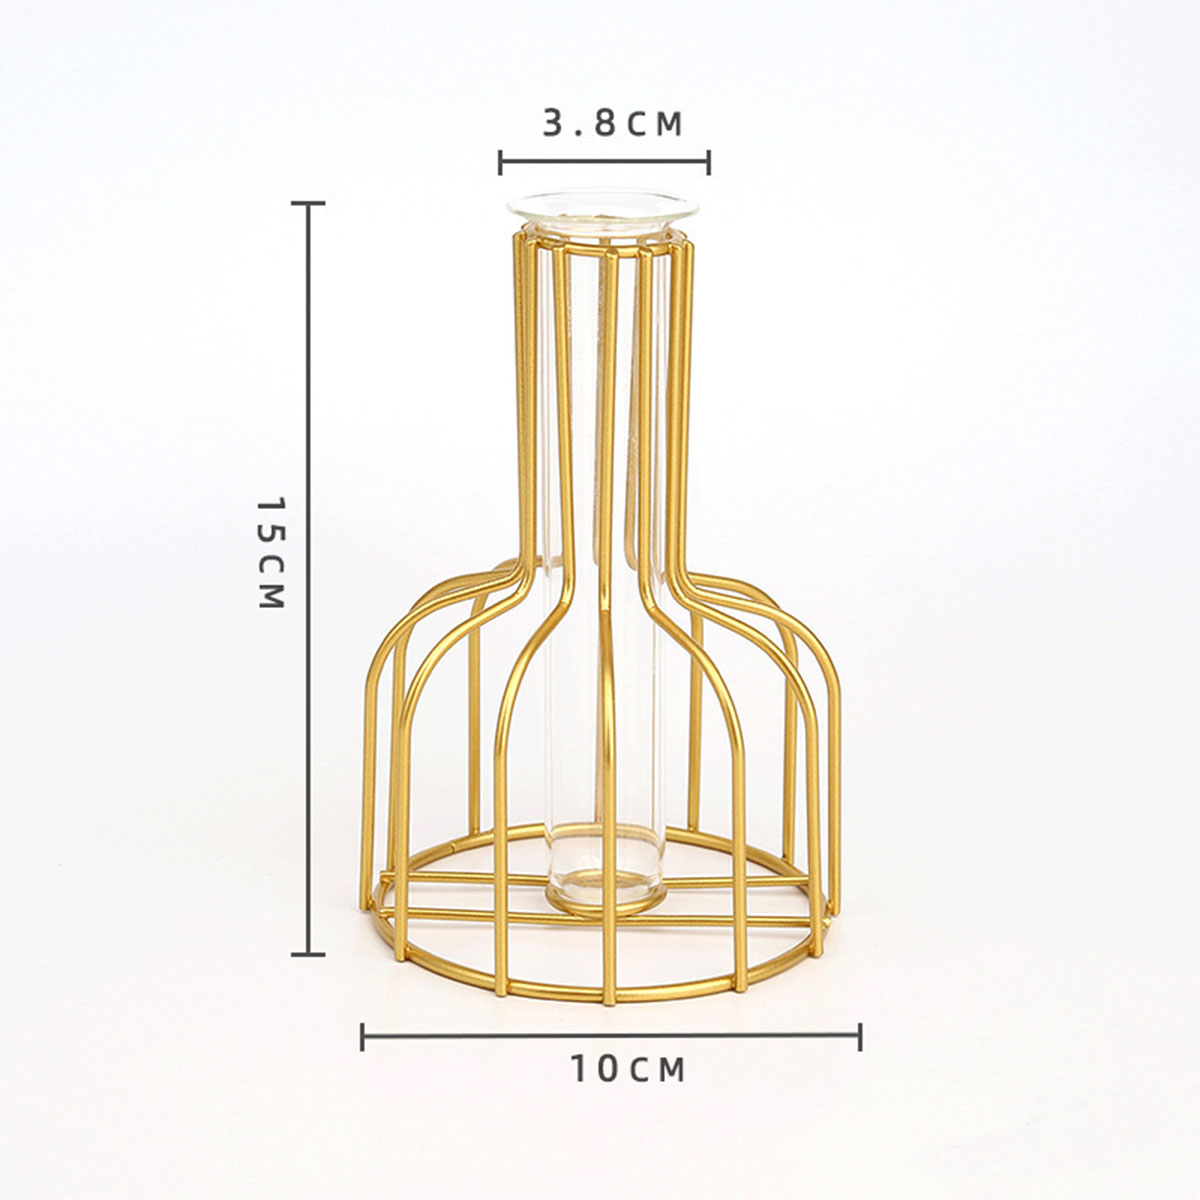 Black/Gold Nordic Style Iron Hydroponic Flower Lantern-shaped Vase Decoration